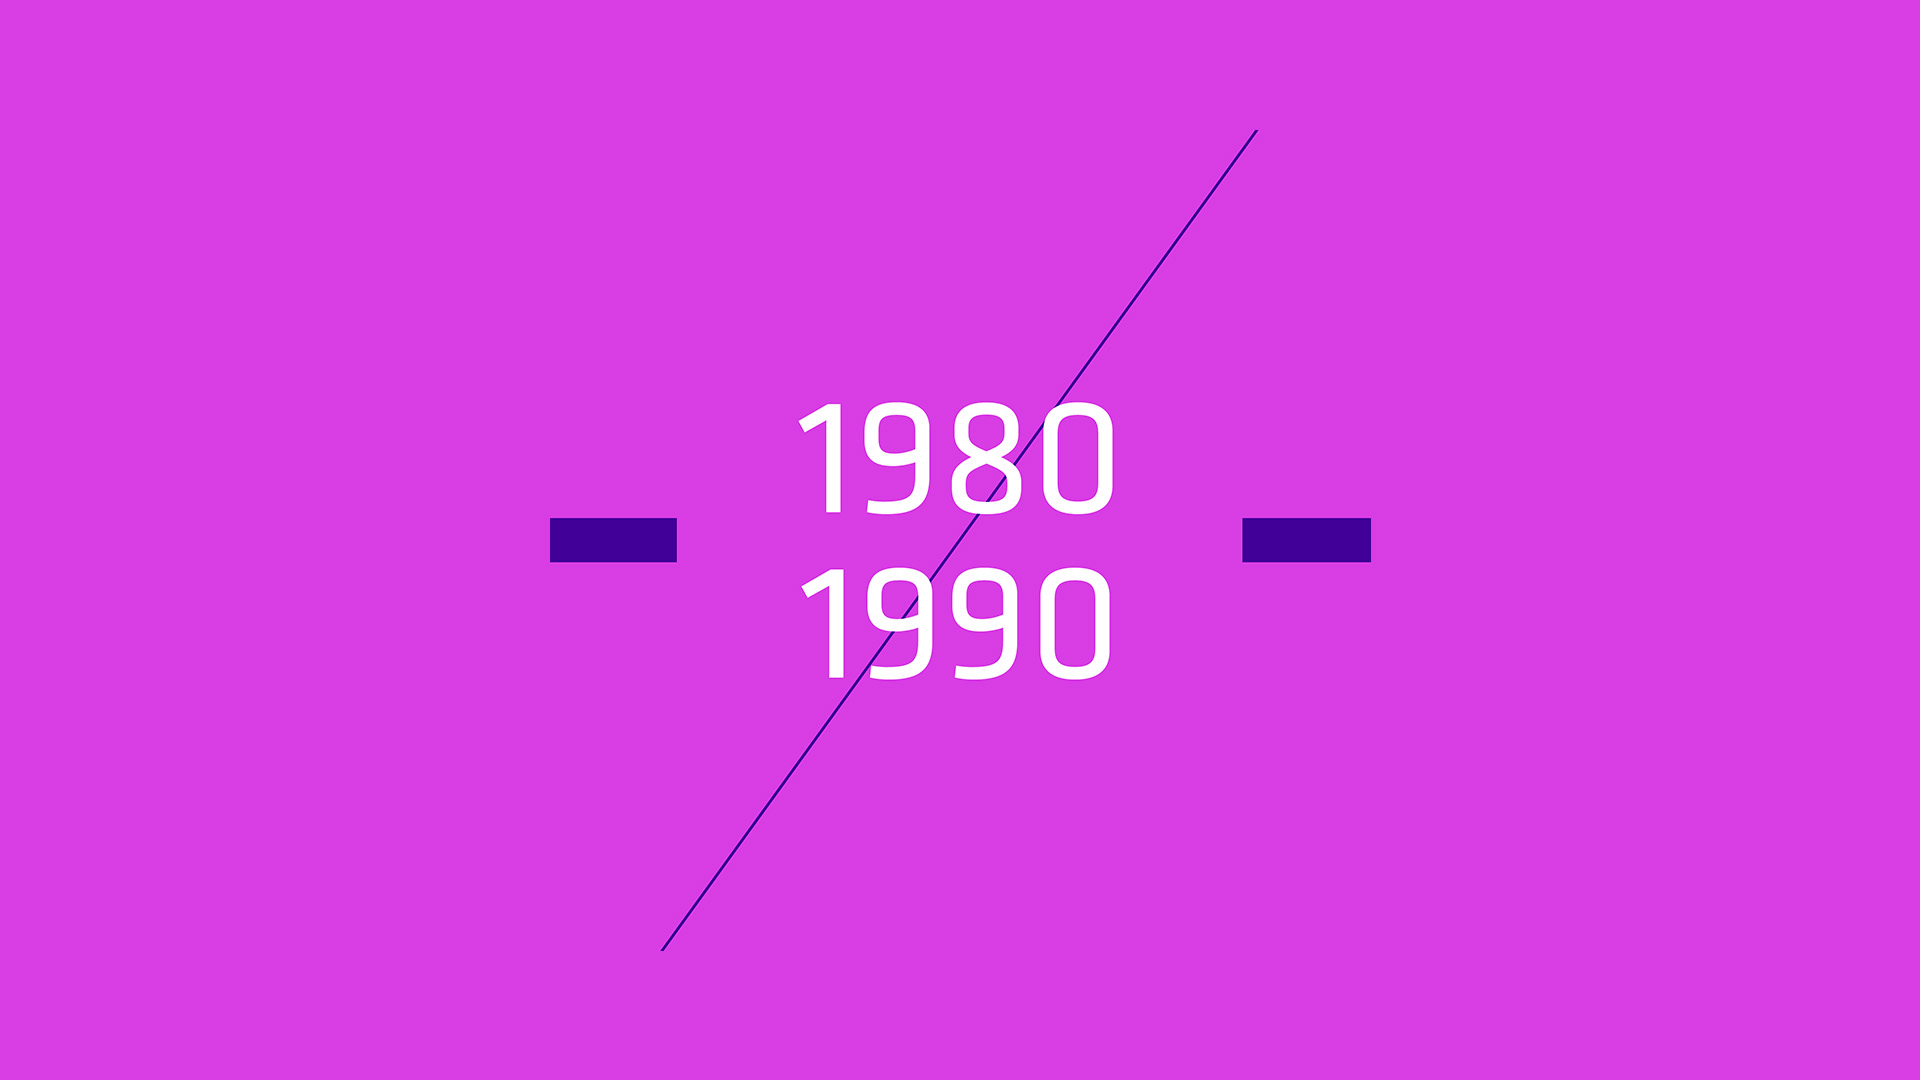 1980-1990